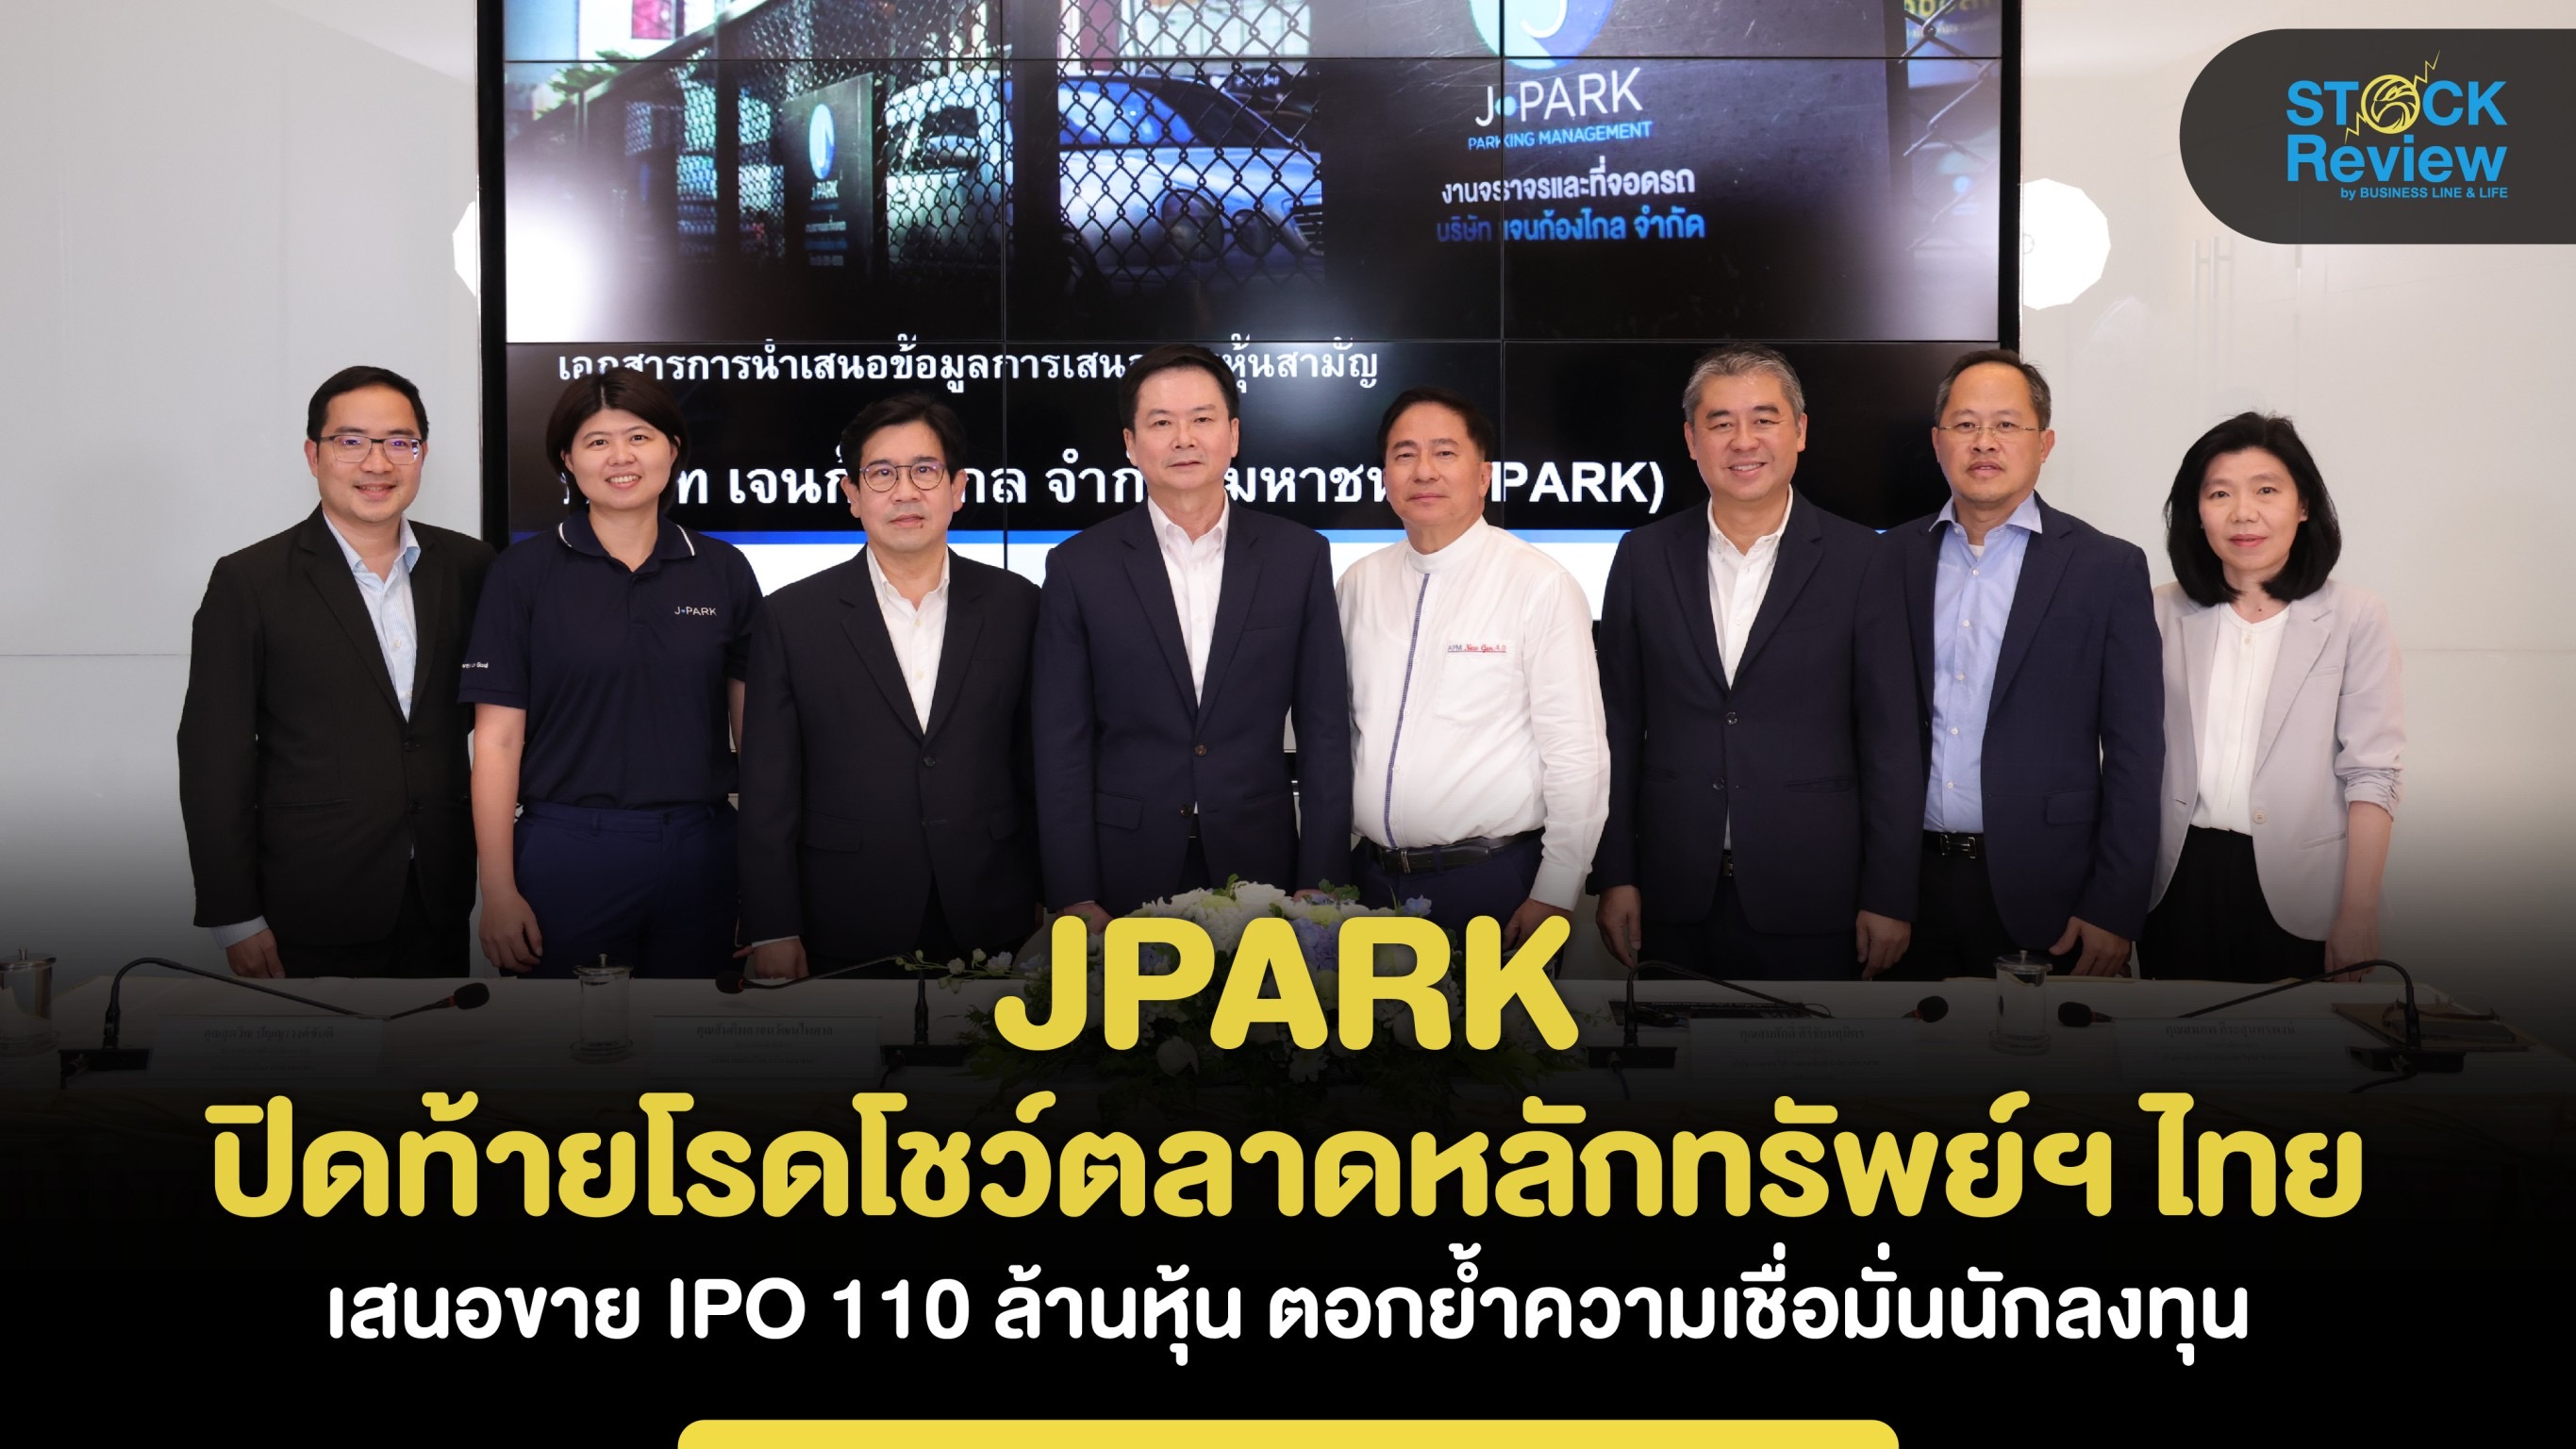 JPARK ปิดท้ายโรดโชว์ตลาดหลักทรัพย์ เสนอขาย IPO 110 ล้านหุ้น ตอกย้ำความเชื่อมั่นนักลงทุน